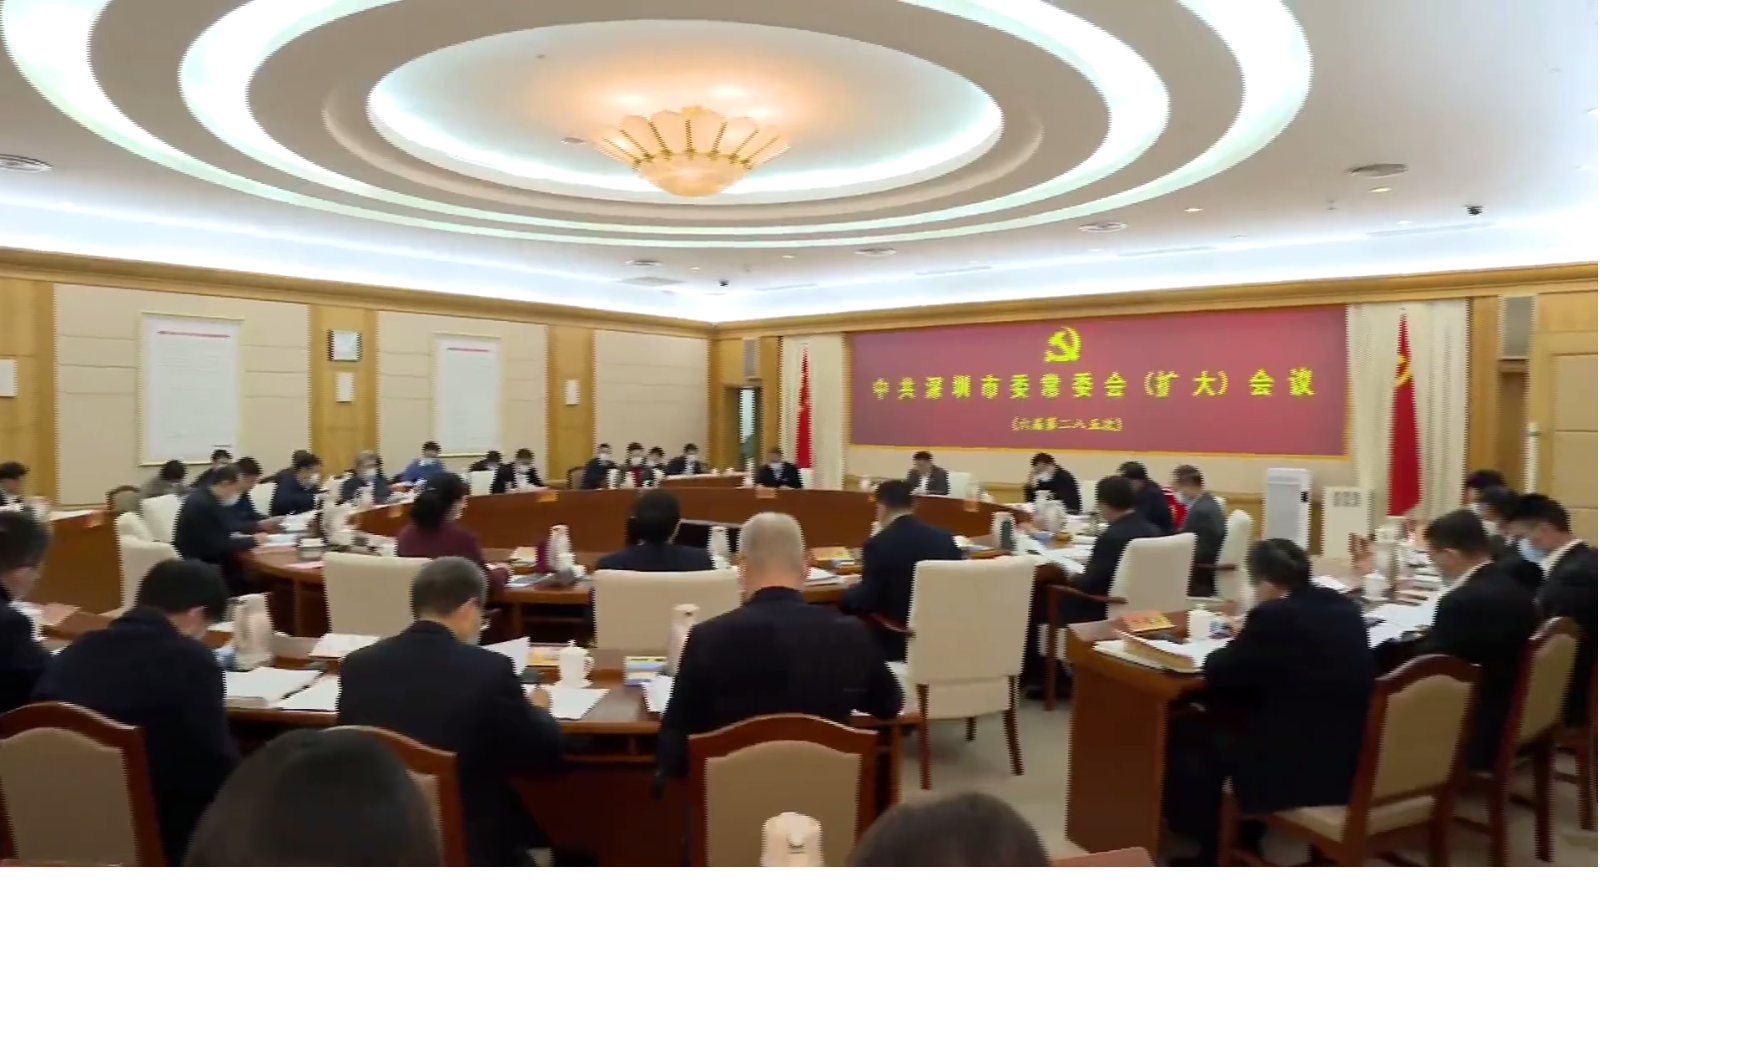 以深圳先行示范区标准 把基层党组织建设得更加坚强有力